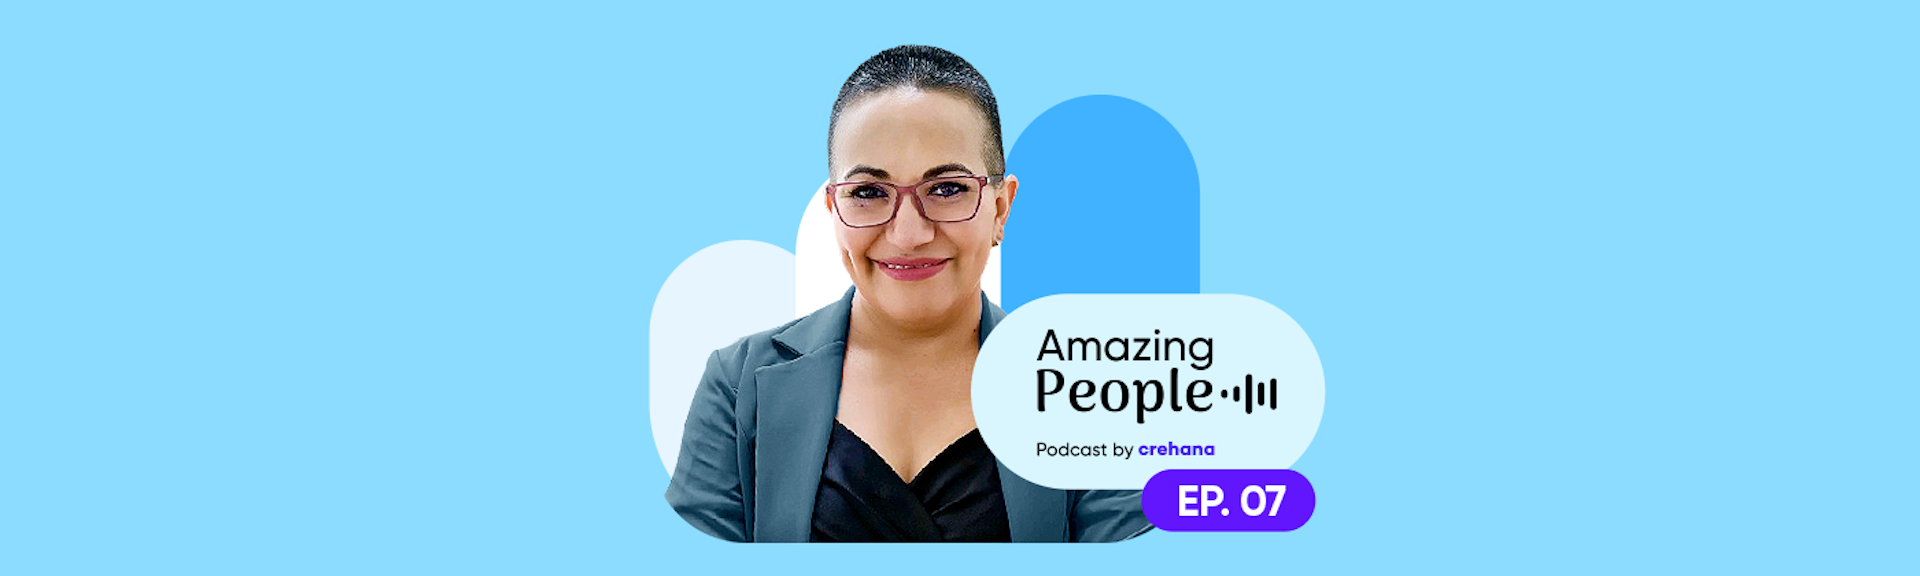 ¿Cómo las empresas están digitalizando la gestión de RR.HH. para potenciar el talento? Descubre el panorama en el nuevo episodio de Amazing People Podcast